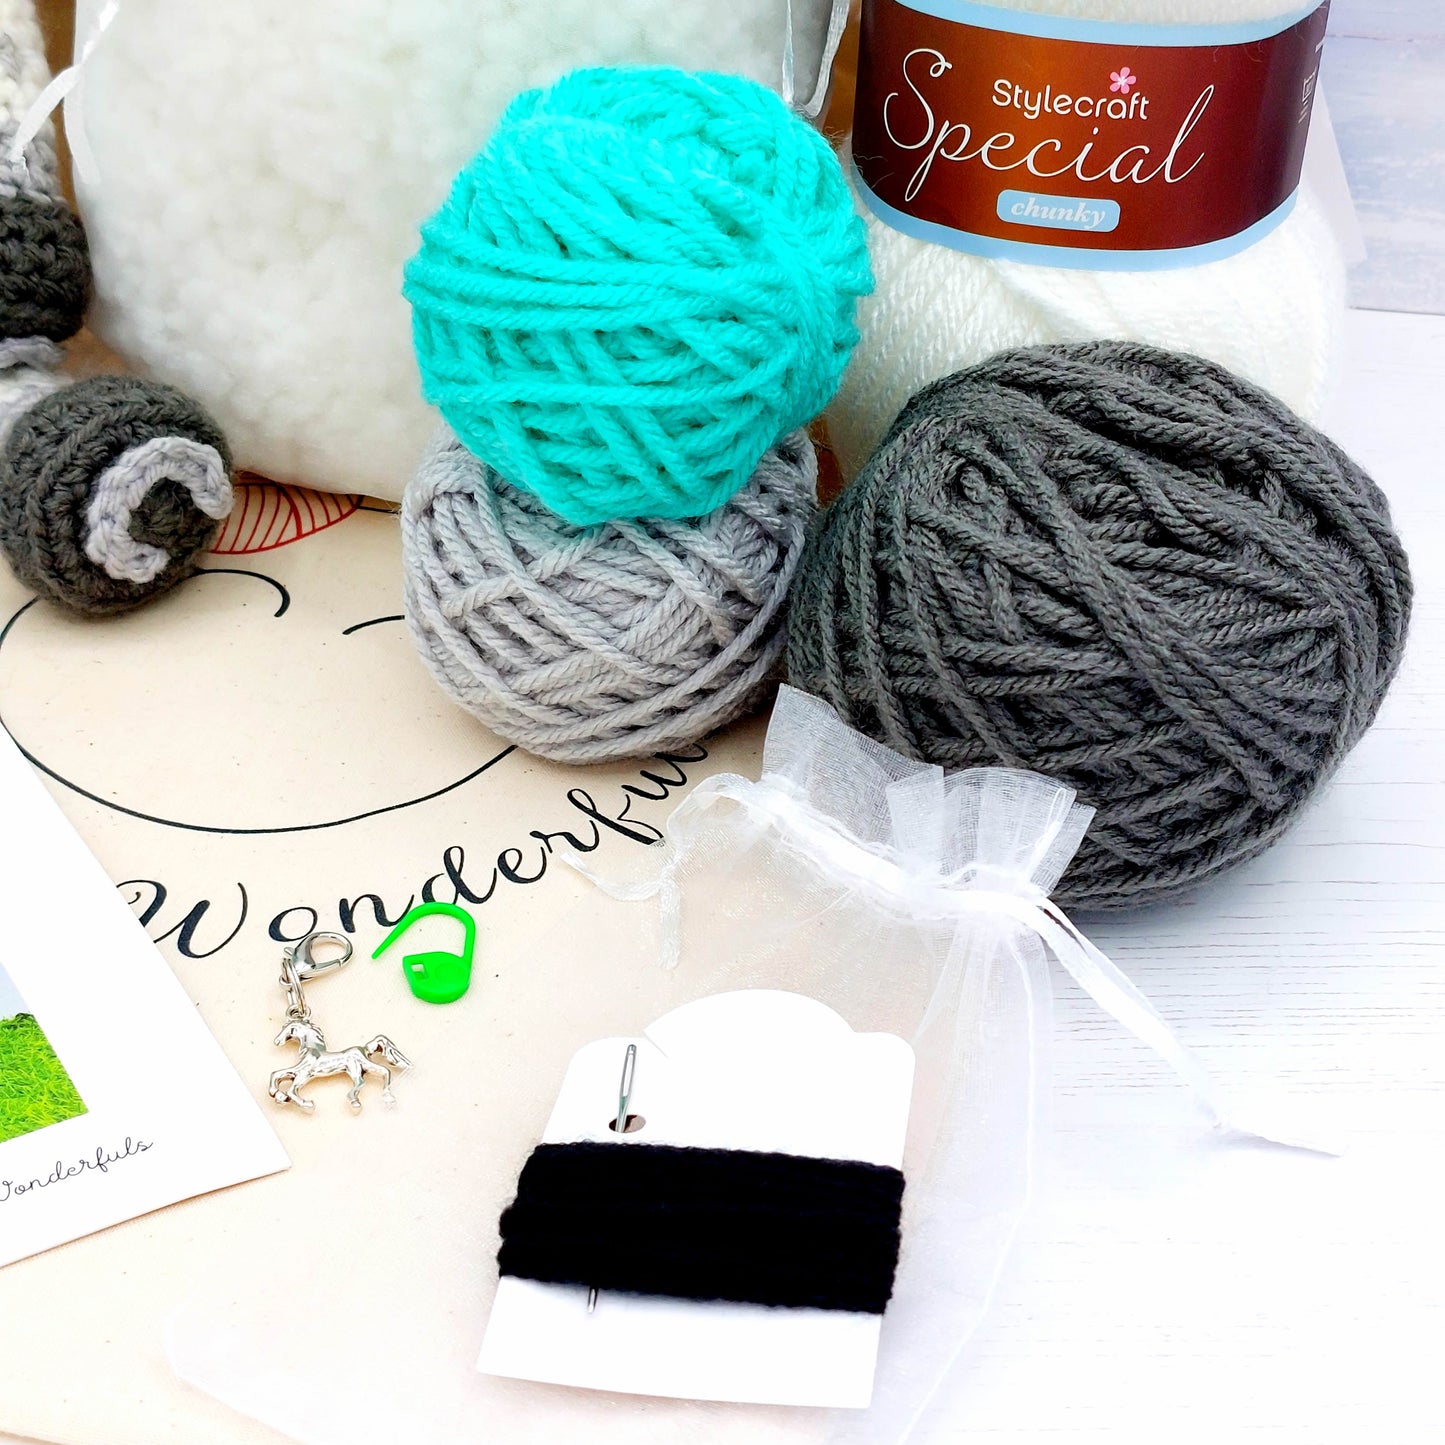 BRAND NEW - Sundance and Storm the Horses Crochet Kit